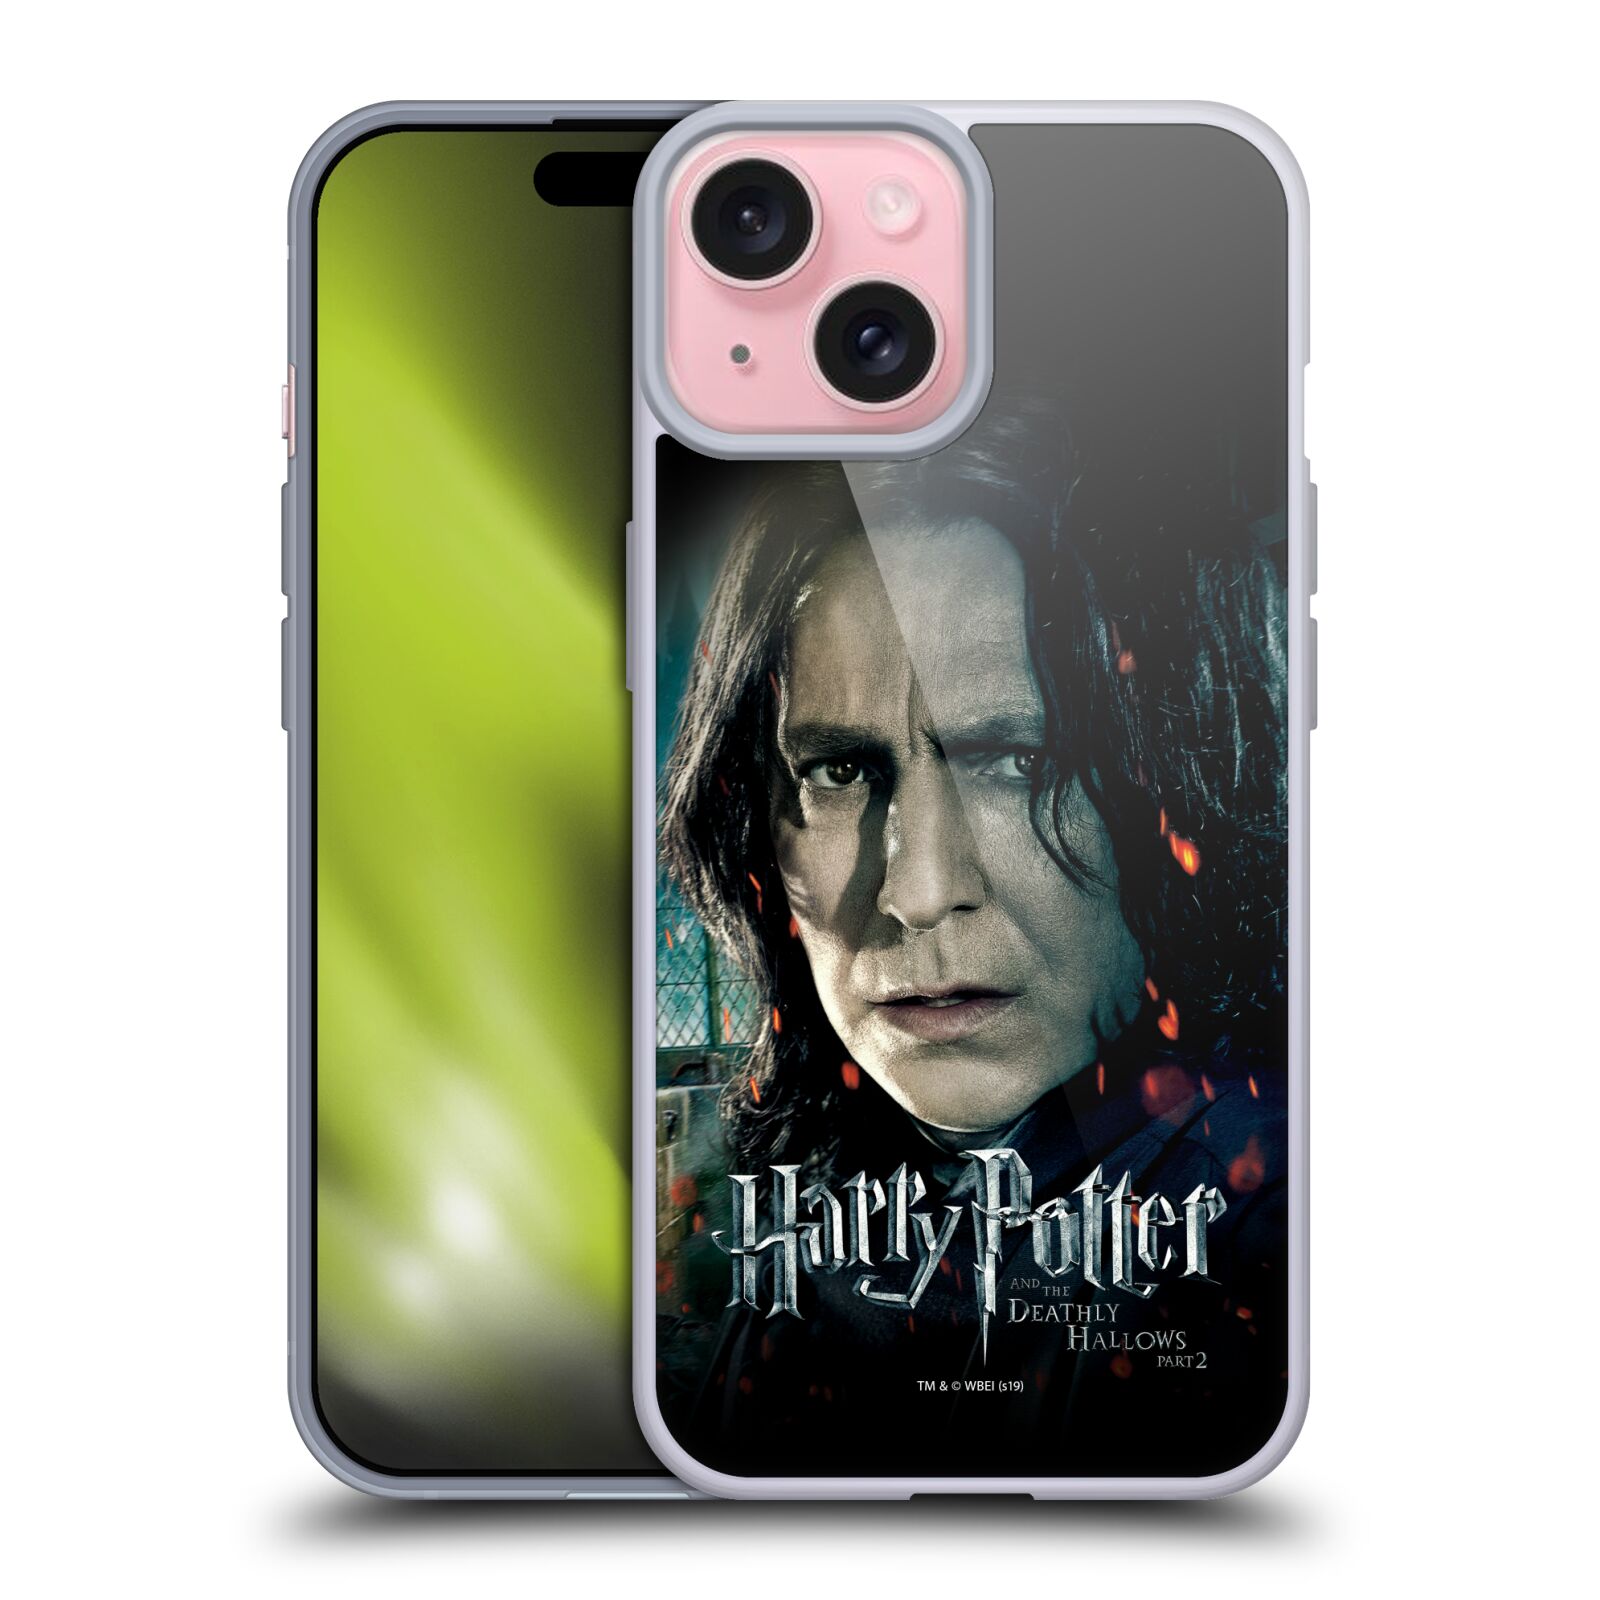 Silikonové lesklé pouzdro na mobil Apple iPhone 15 - Harry Potter a Relikvie smrti - Severus Snape (Silikonový lesklý kryt, obal, pouzdro na mobilní telefon Apple iPhone 15 s licencovaným motivem Harry Potter a Relikvie smrti - Severus Snape)